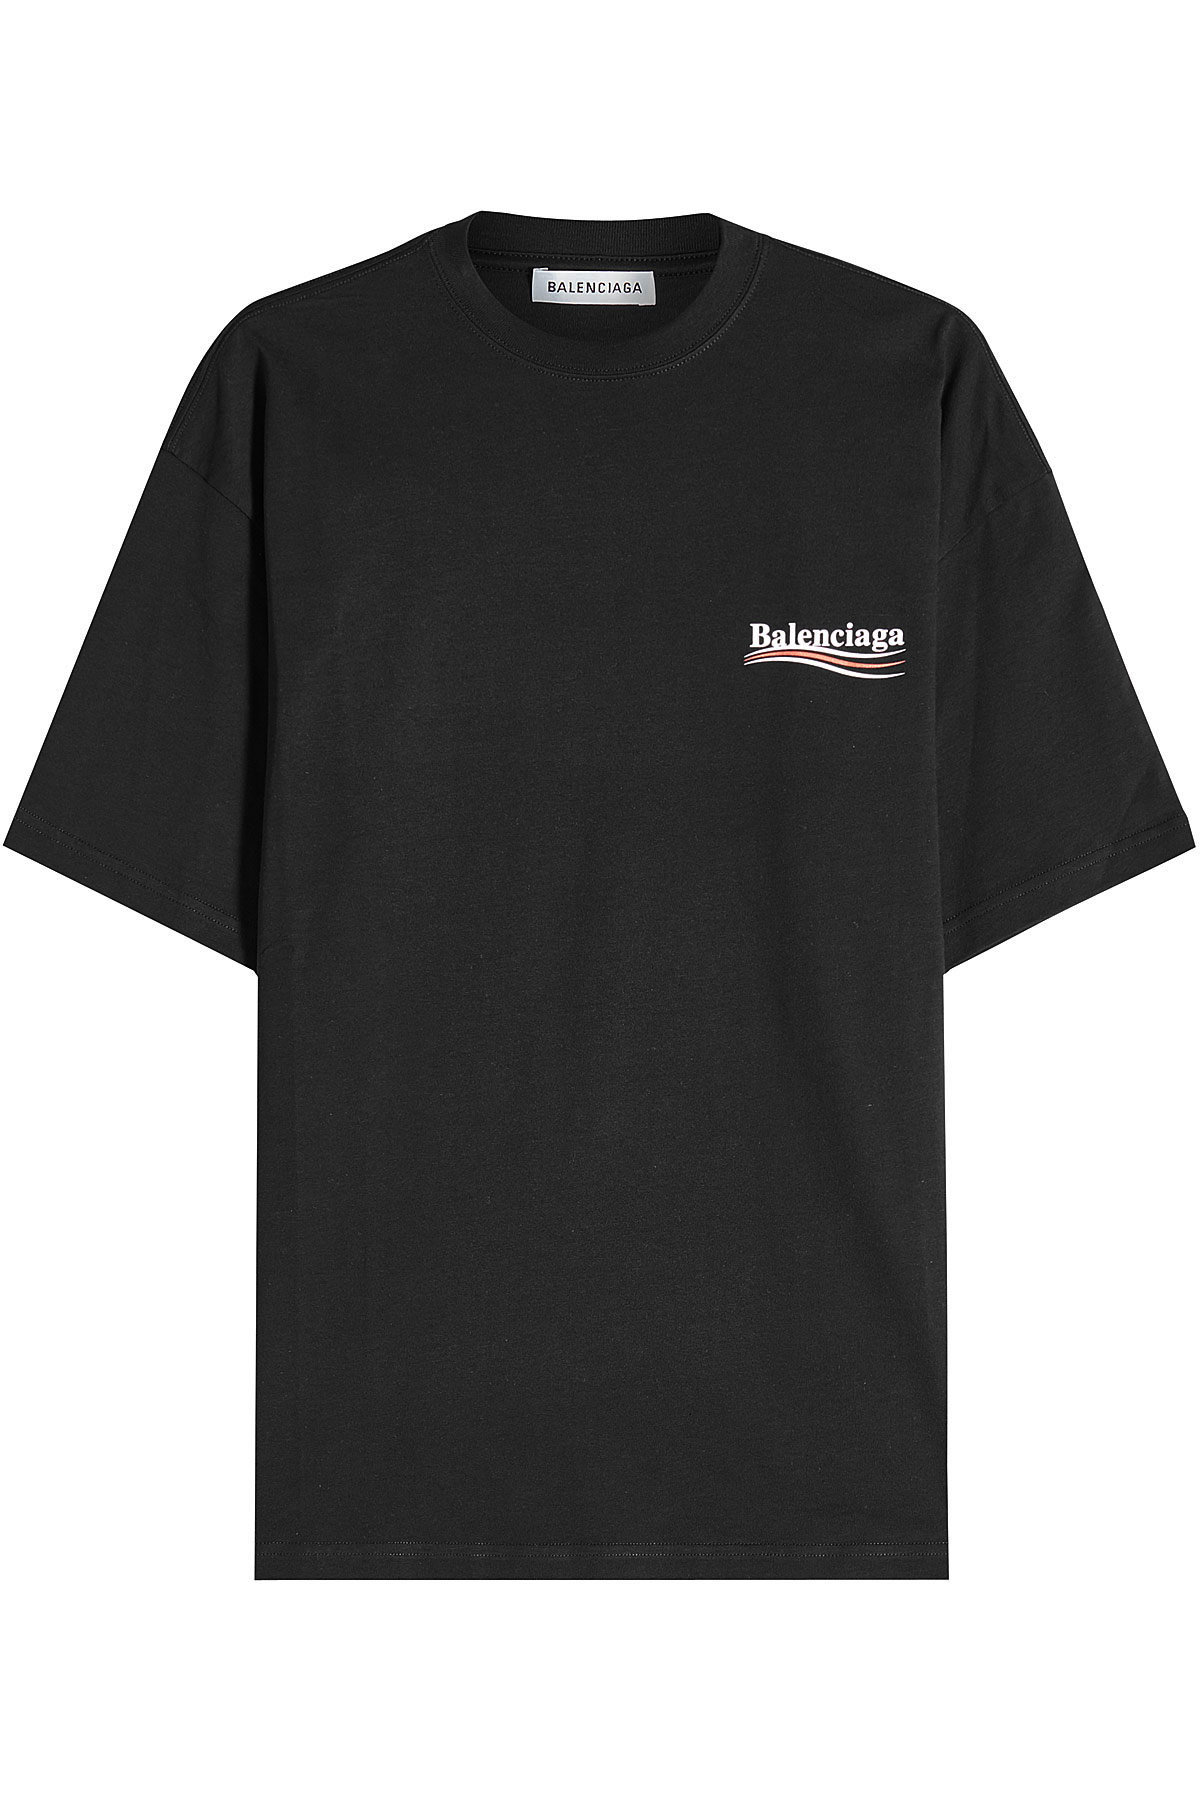 Balenciaga - Political Cotton T-Shirt